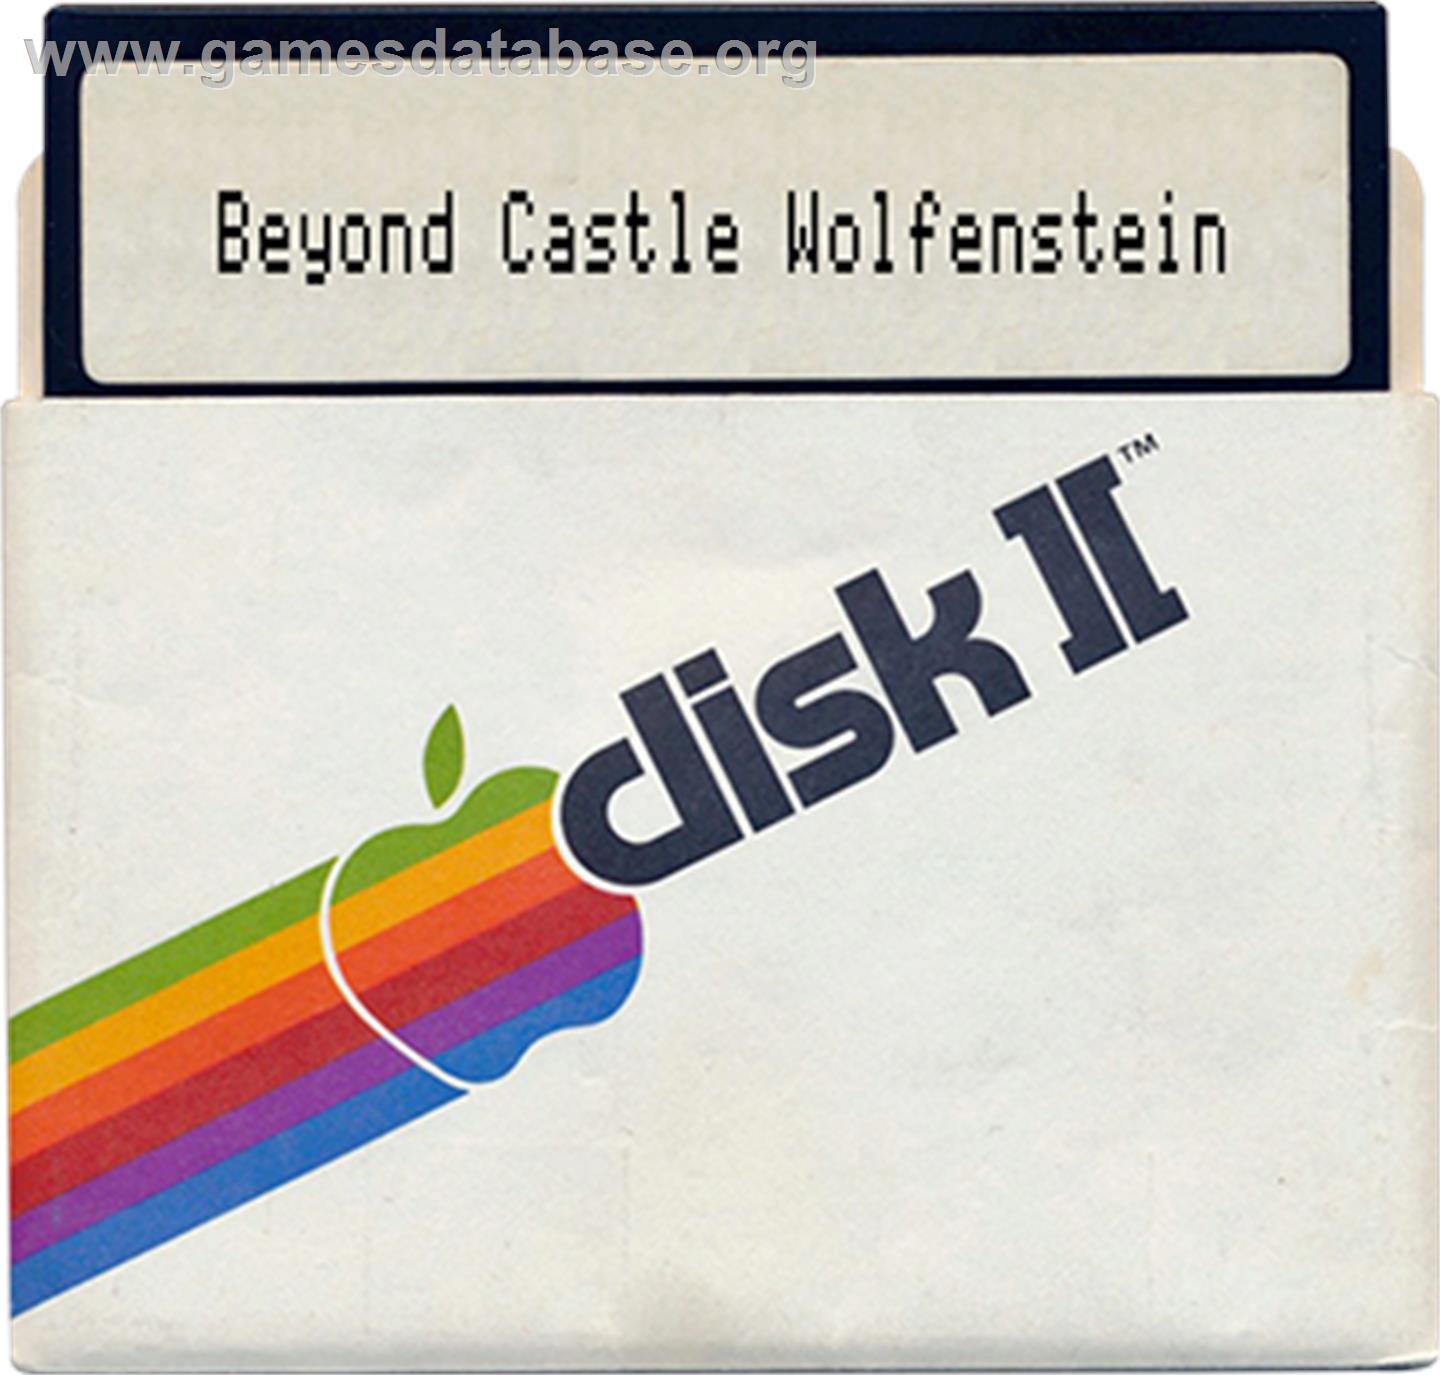 Beyond Castle Wolfenstein - Apple II - Artwork - Disc